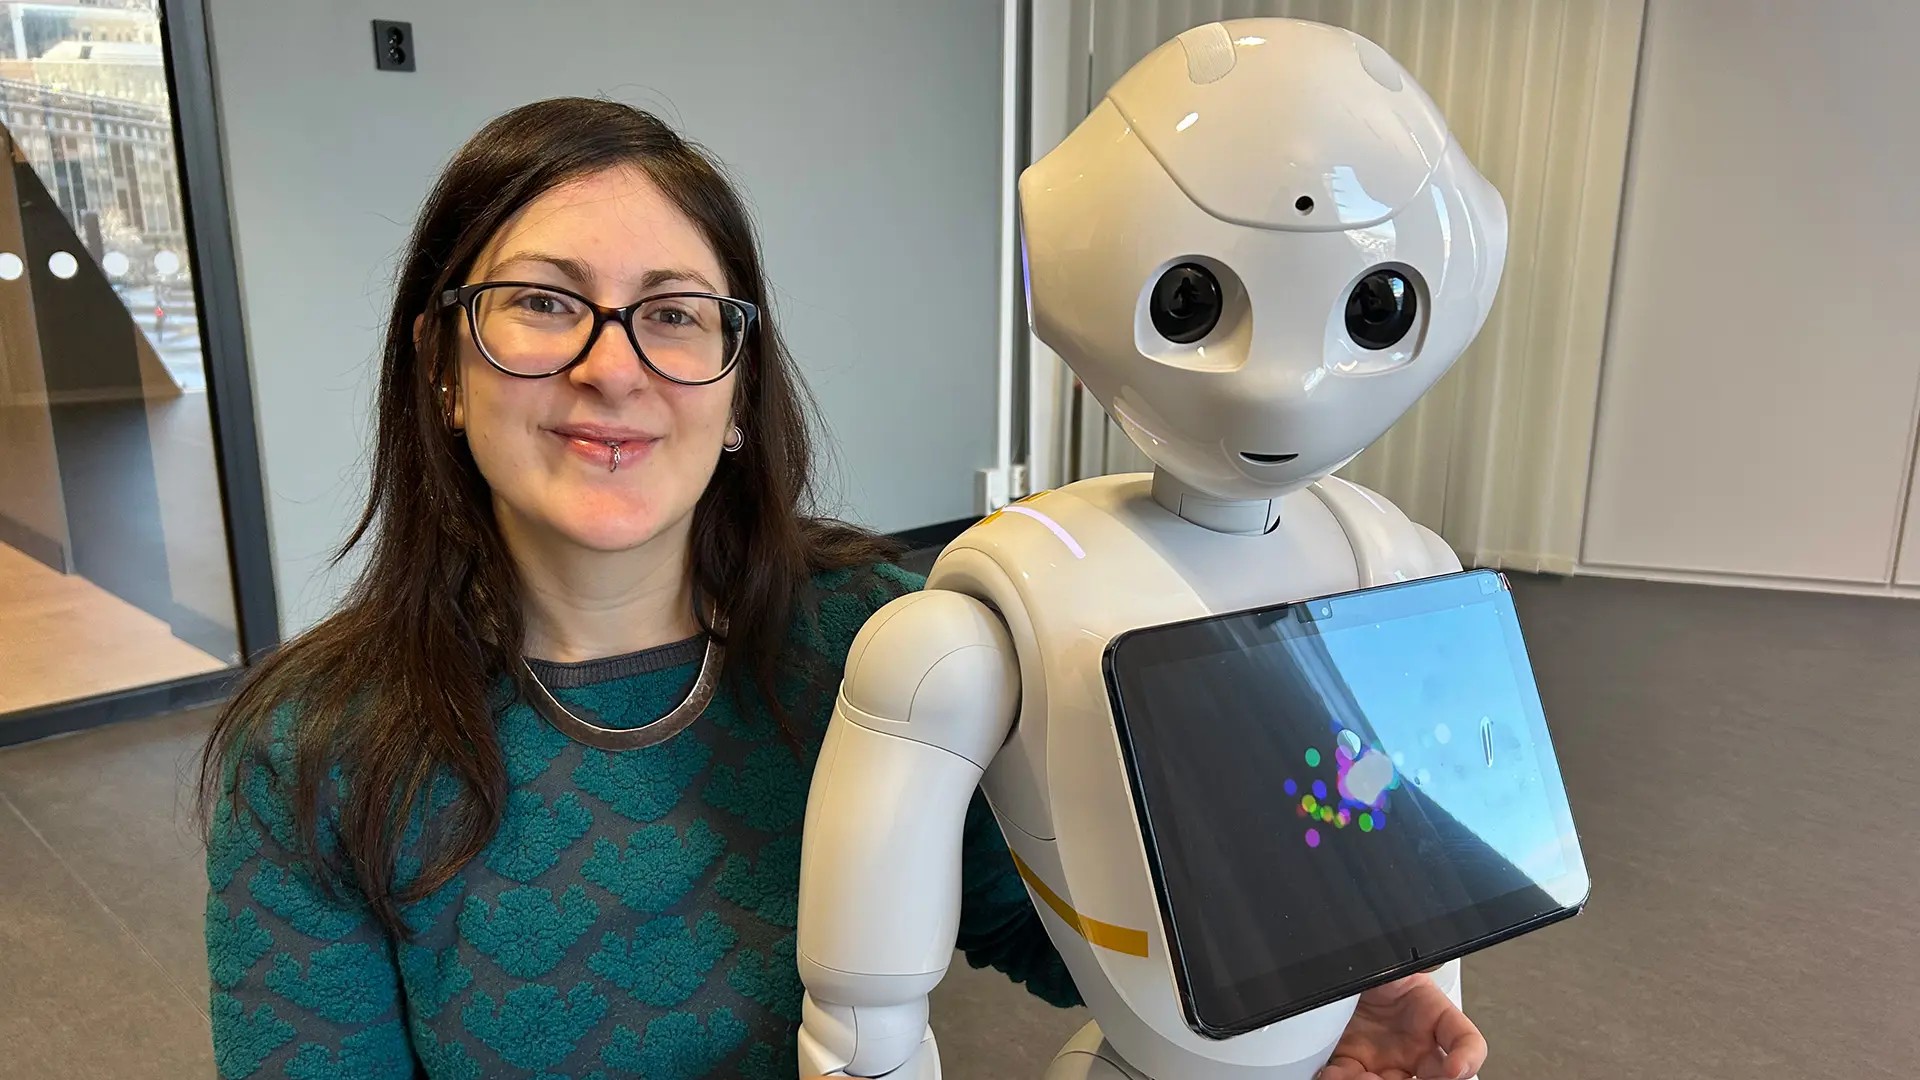 Ilaria Torre tillsammans med roboten Pepper